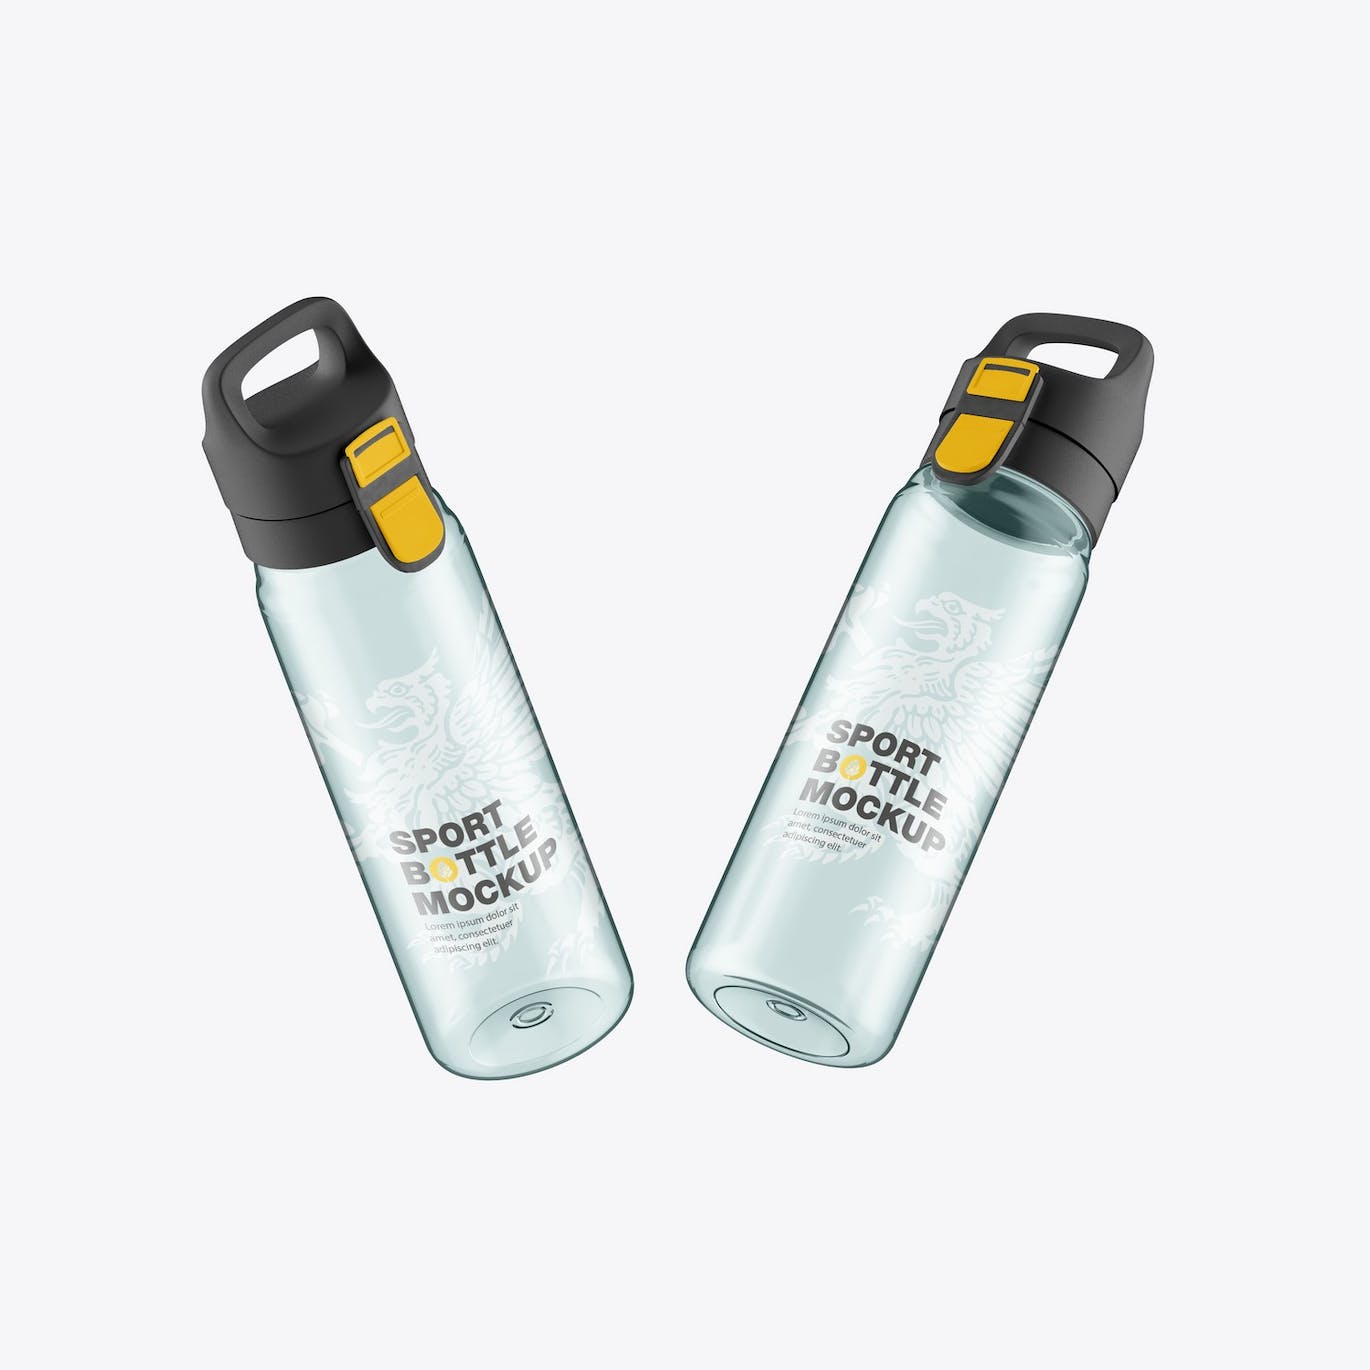 透明塑料运动水瓶设计样机 Sport Bottle Mockup 样机素材 第4张